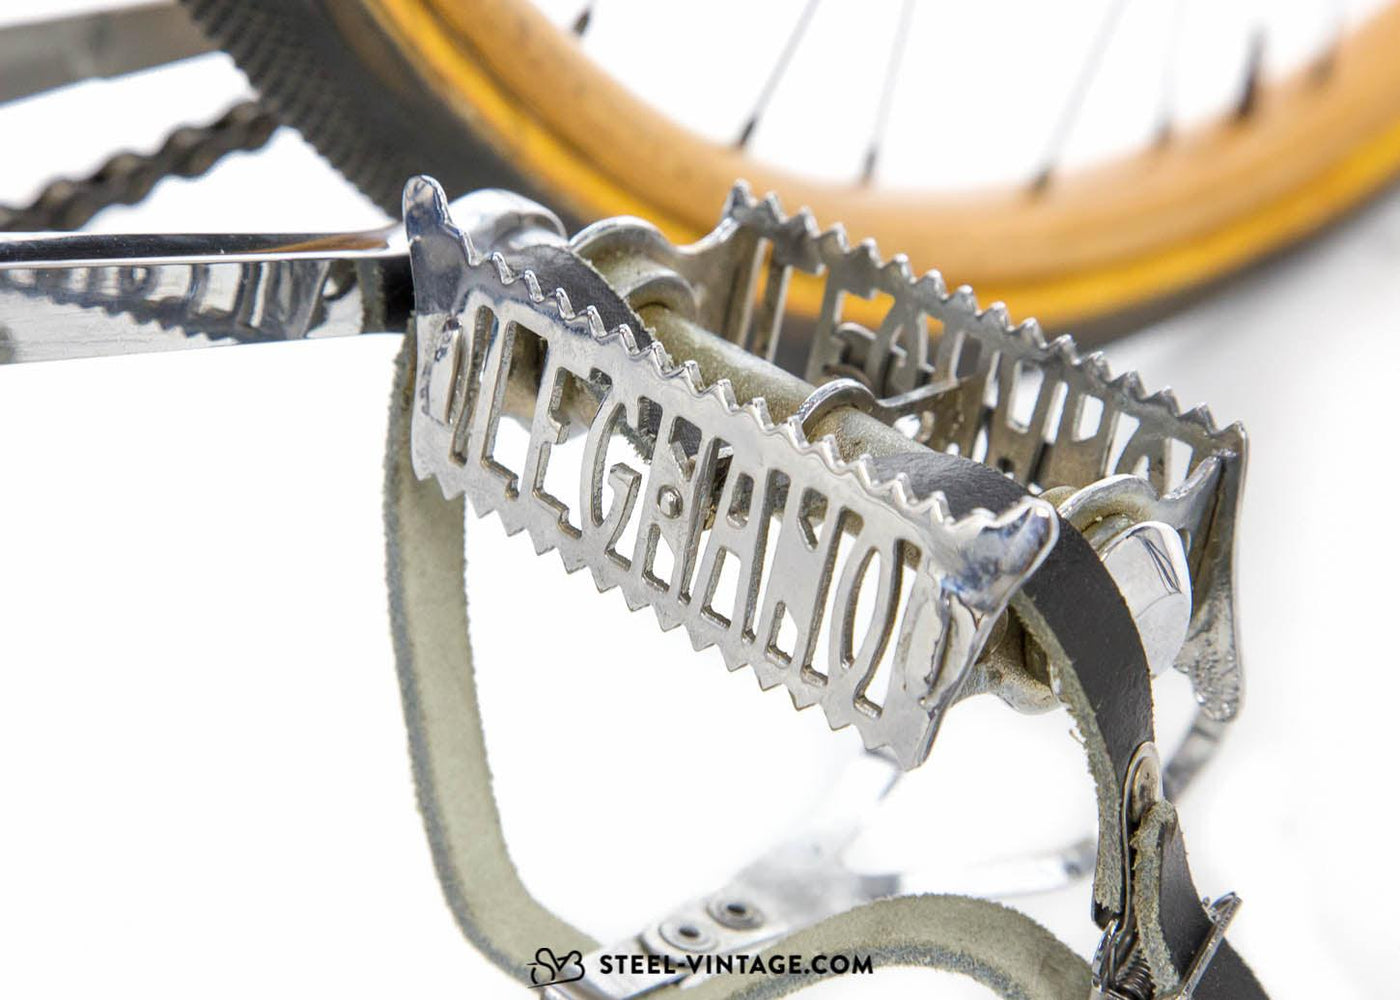 Legnano Roma Campione Del Mondo Road Bike 1933 - Steel Vintage Bikes